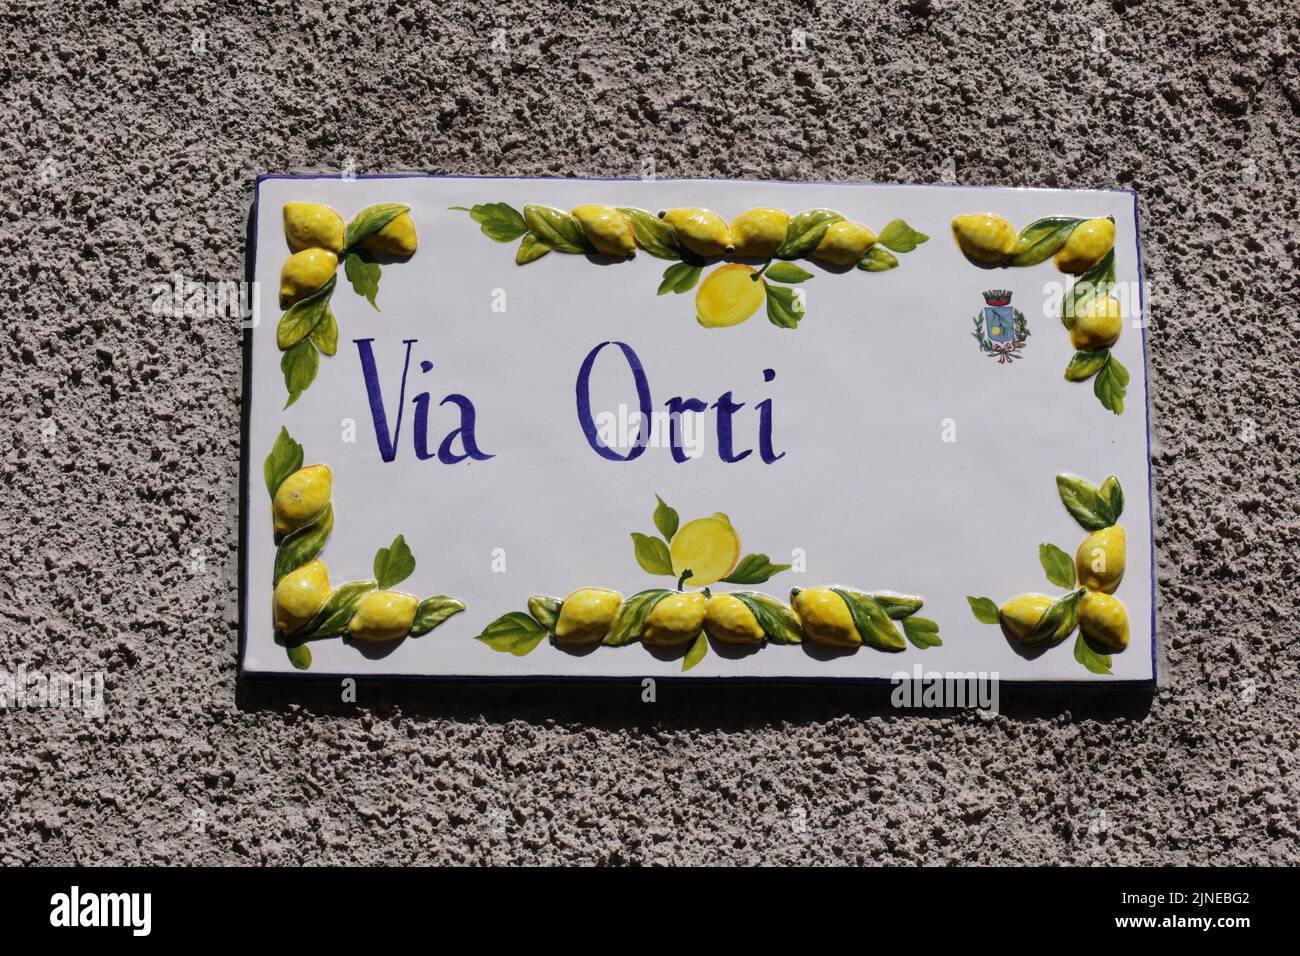 Sonniger Frühlingstag in Limone sul Garda am Gardasee Stock Photo